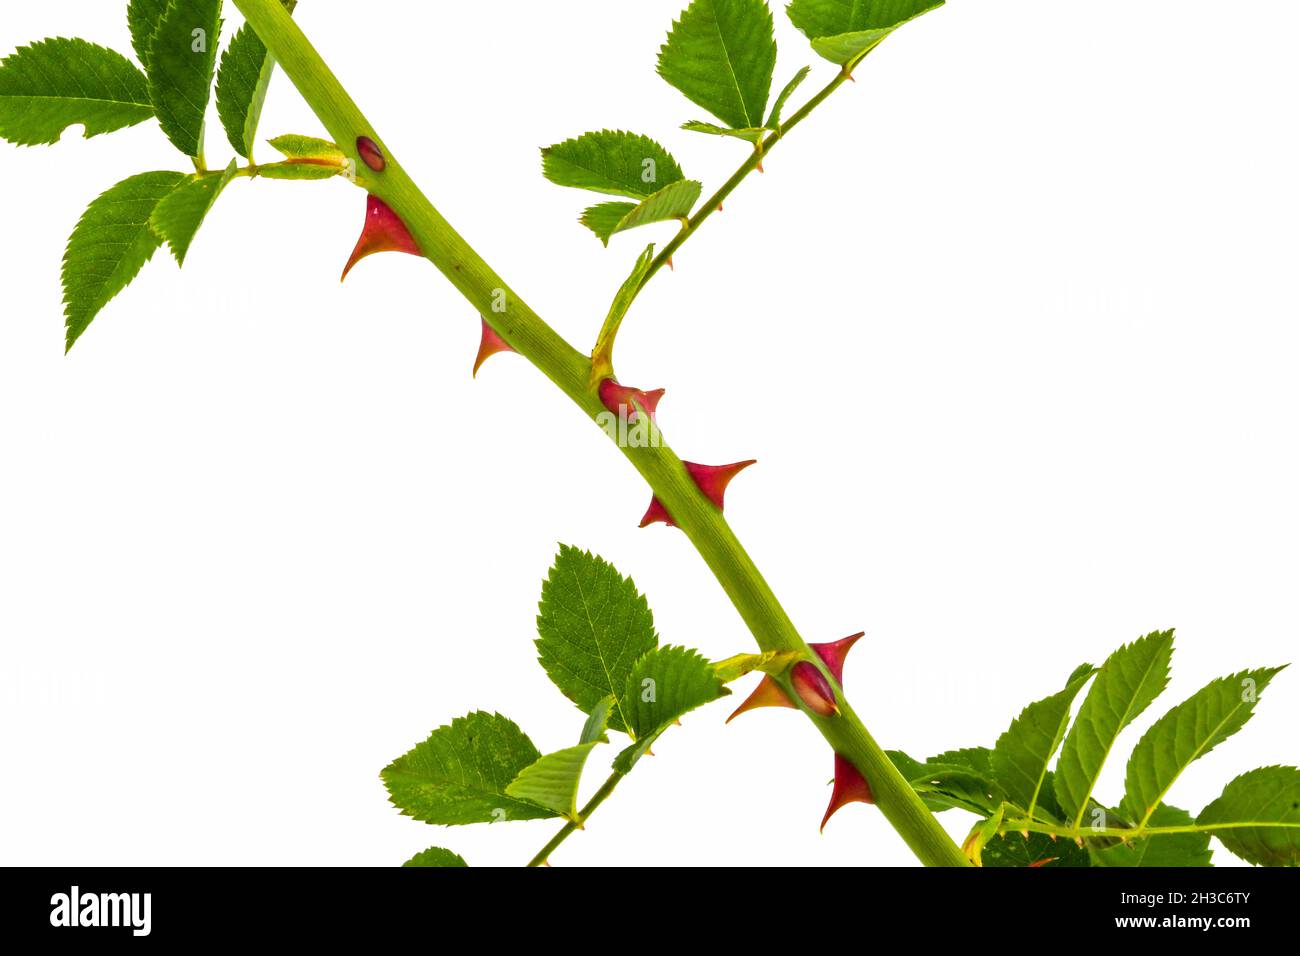 Vue rapprochée de la tige d'une plante rose isolée sur un fond blanc Uni.Copier l'espace.Personne. Banque D'Images